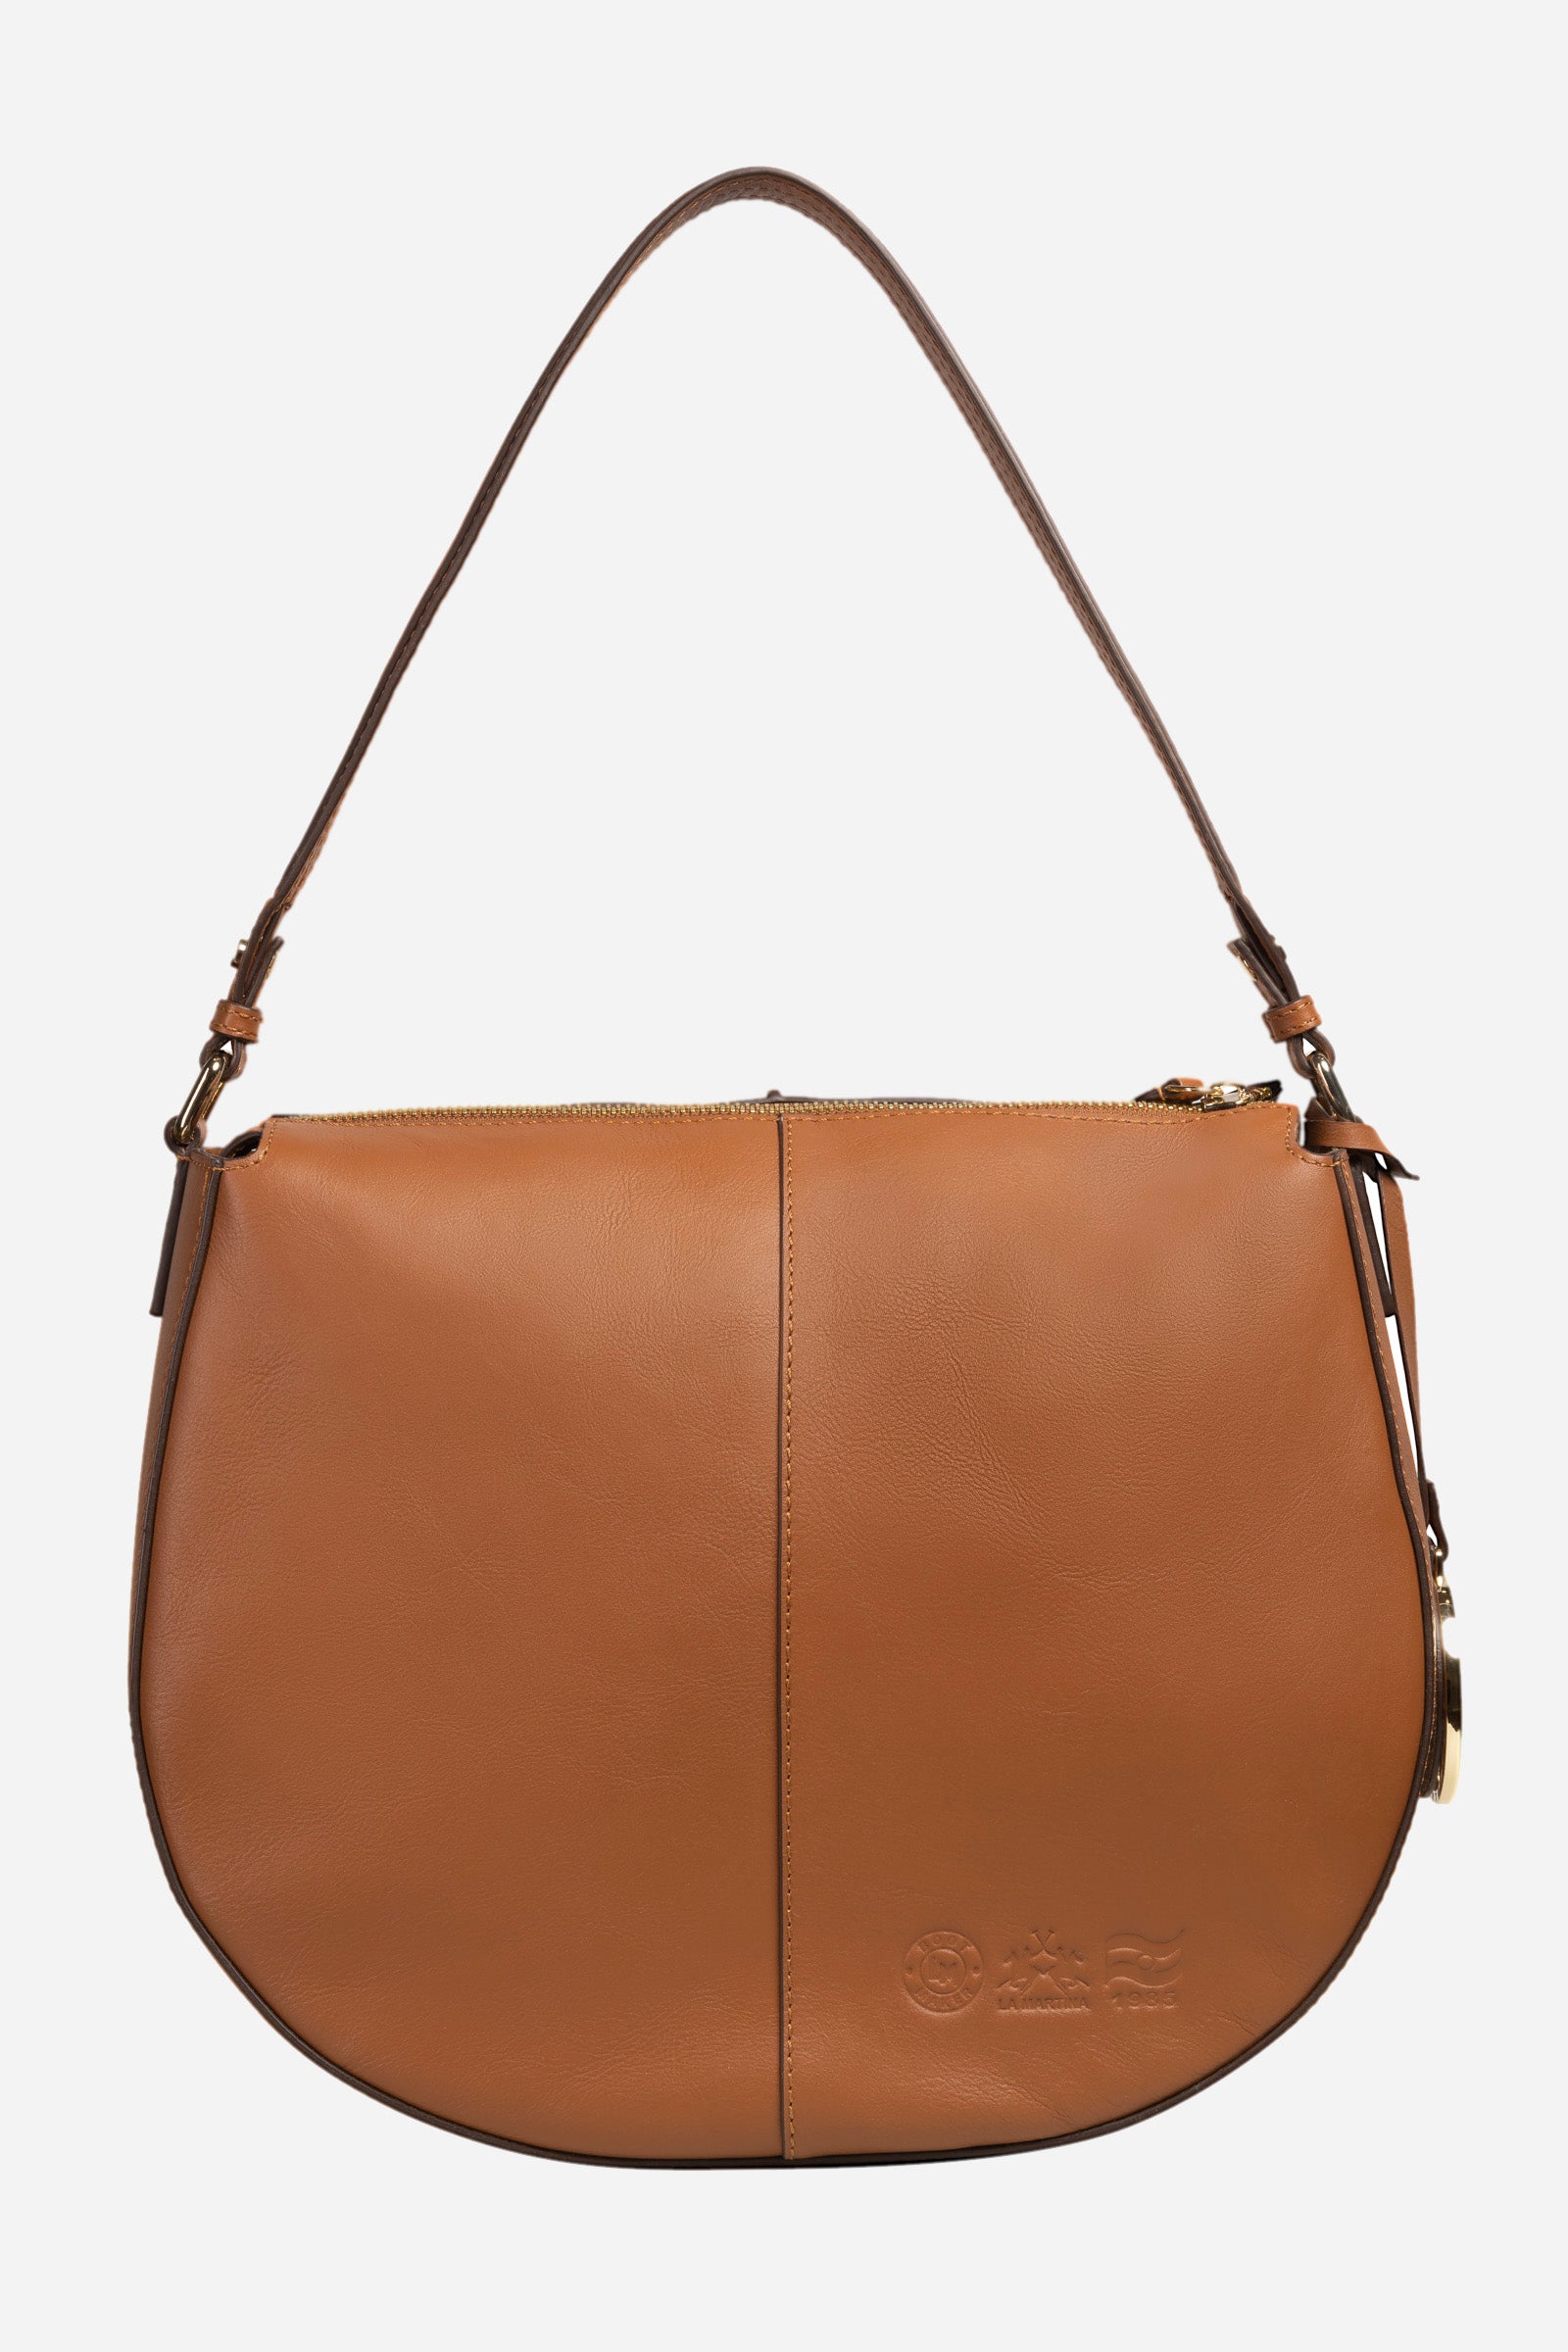 Leather shoulder bag - Denise